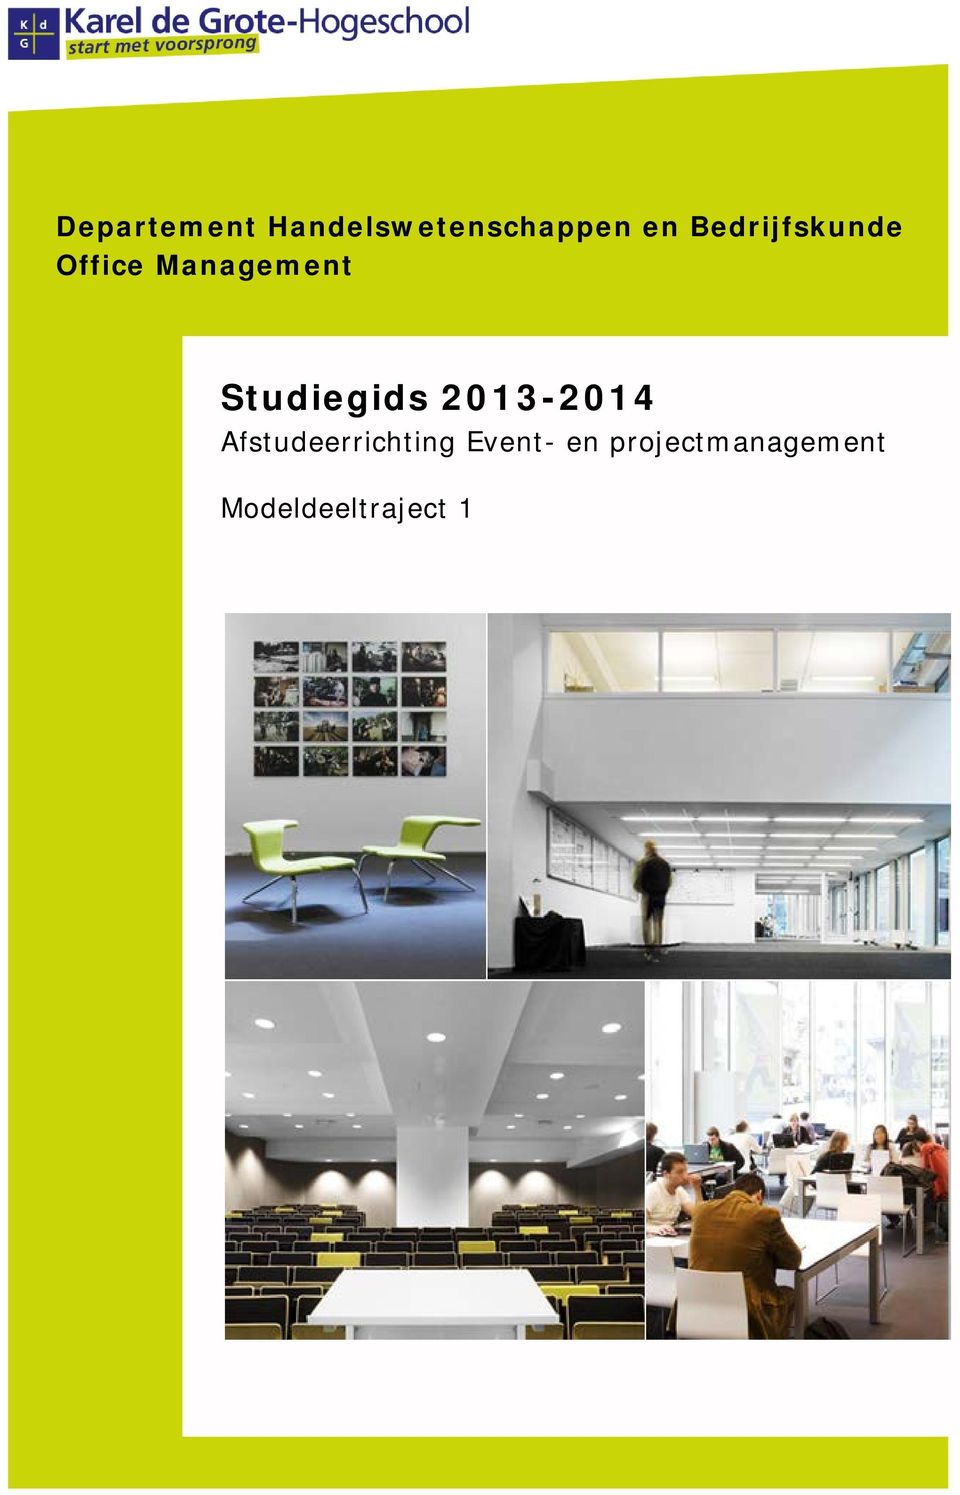 2013-2014 Afstudeerrichting